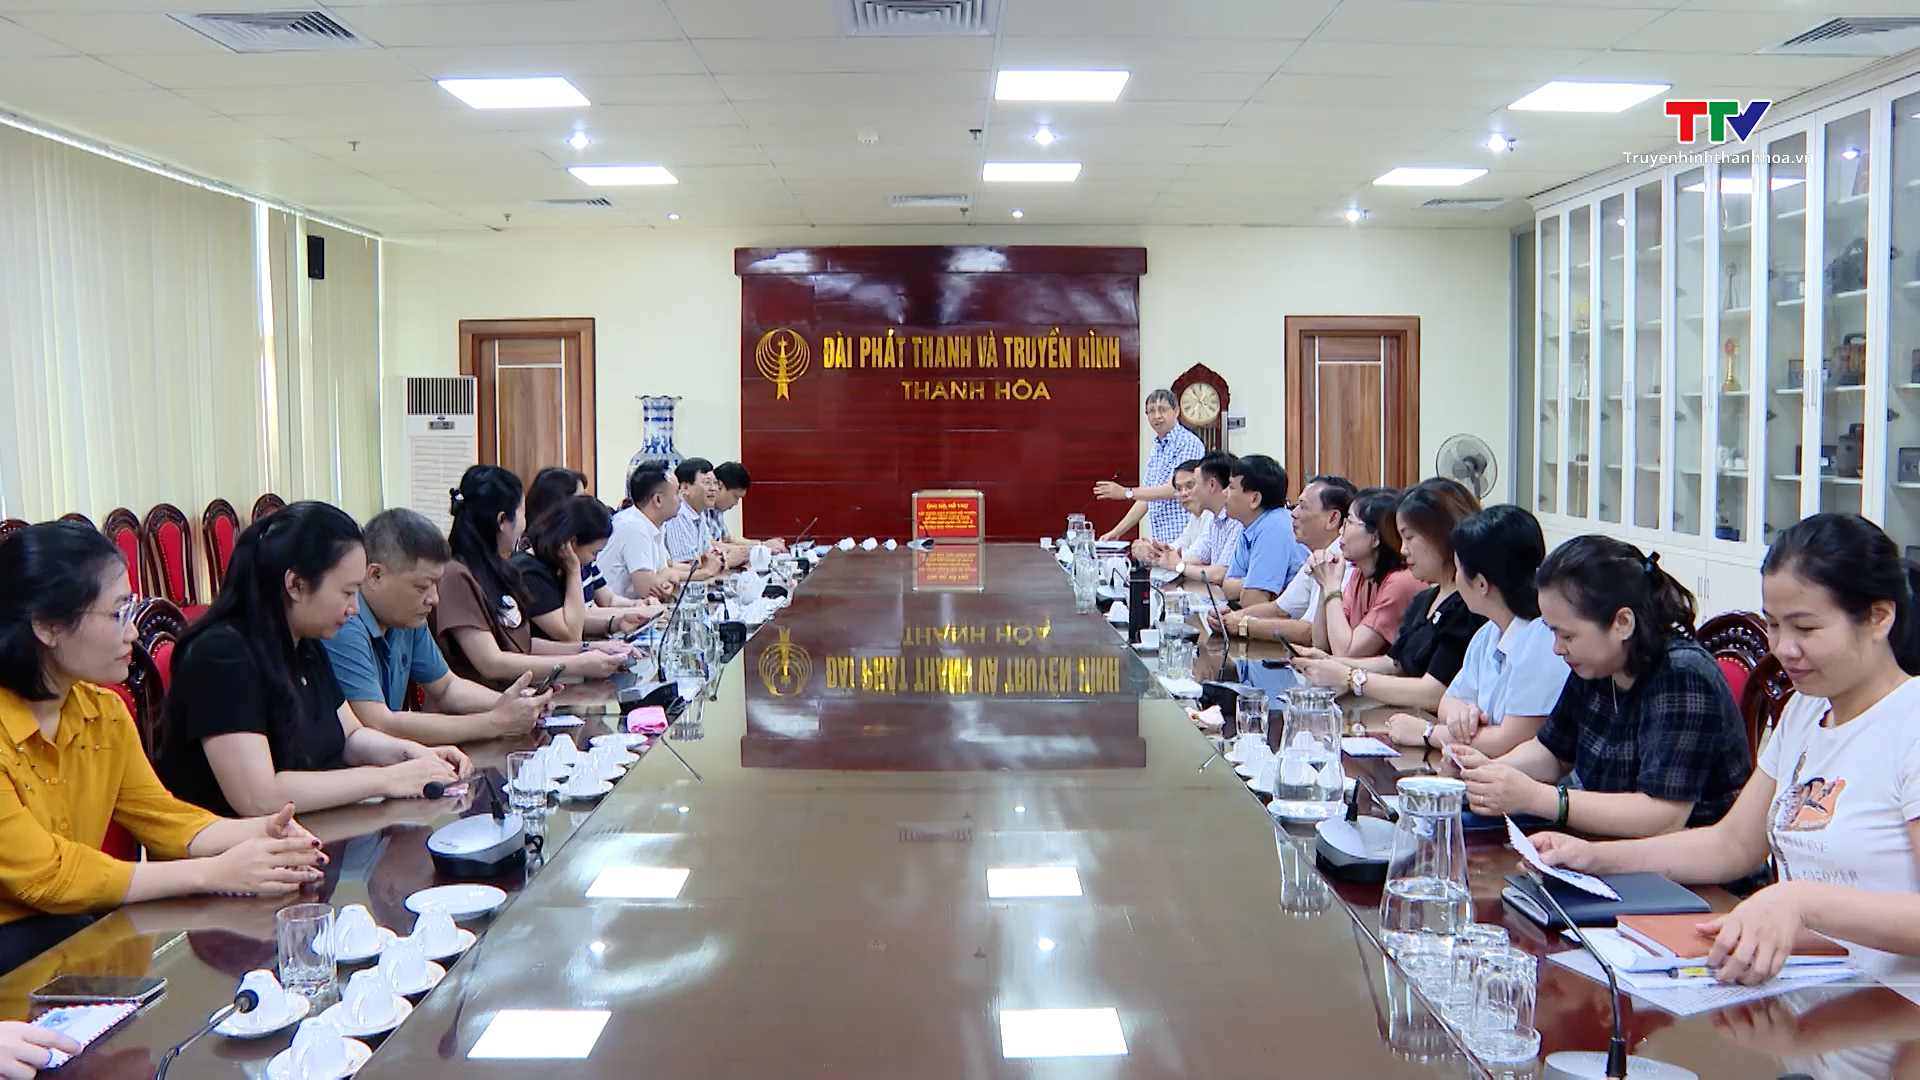 Đài Phát thanh và Truyền hình Thanh Hóa chung tay hỗ trợ xây dựng nhà ở cho hộ nghèo- Ảnh 1.